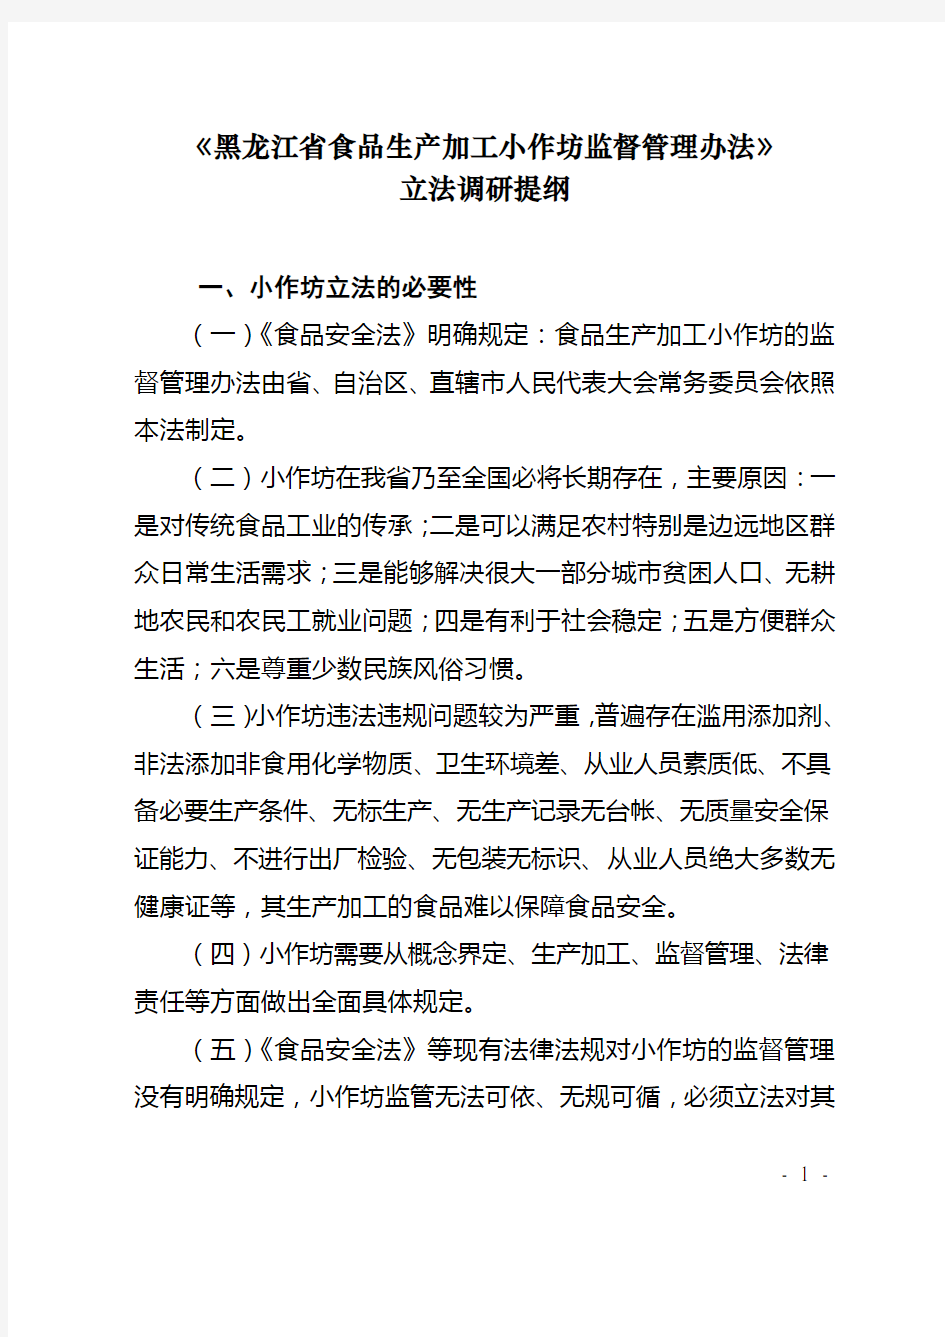 《黑龙江省食品生产加工小作坊监督管理办法》